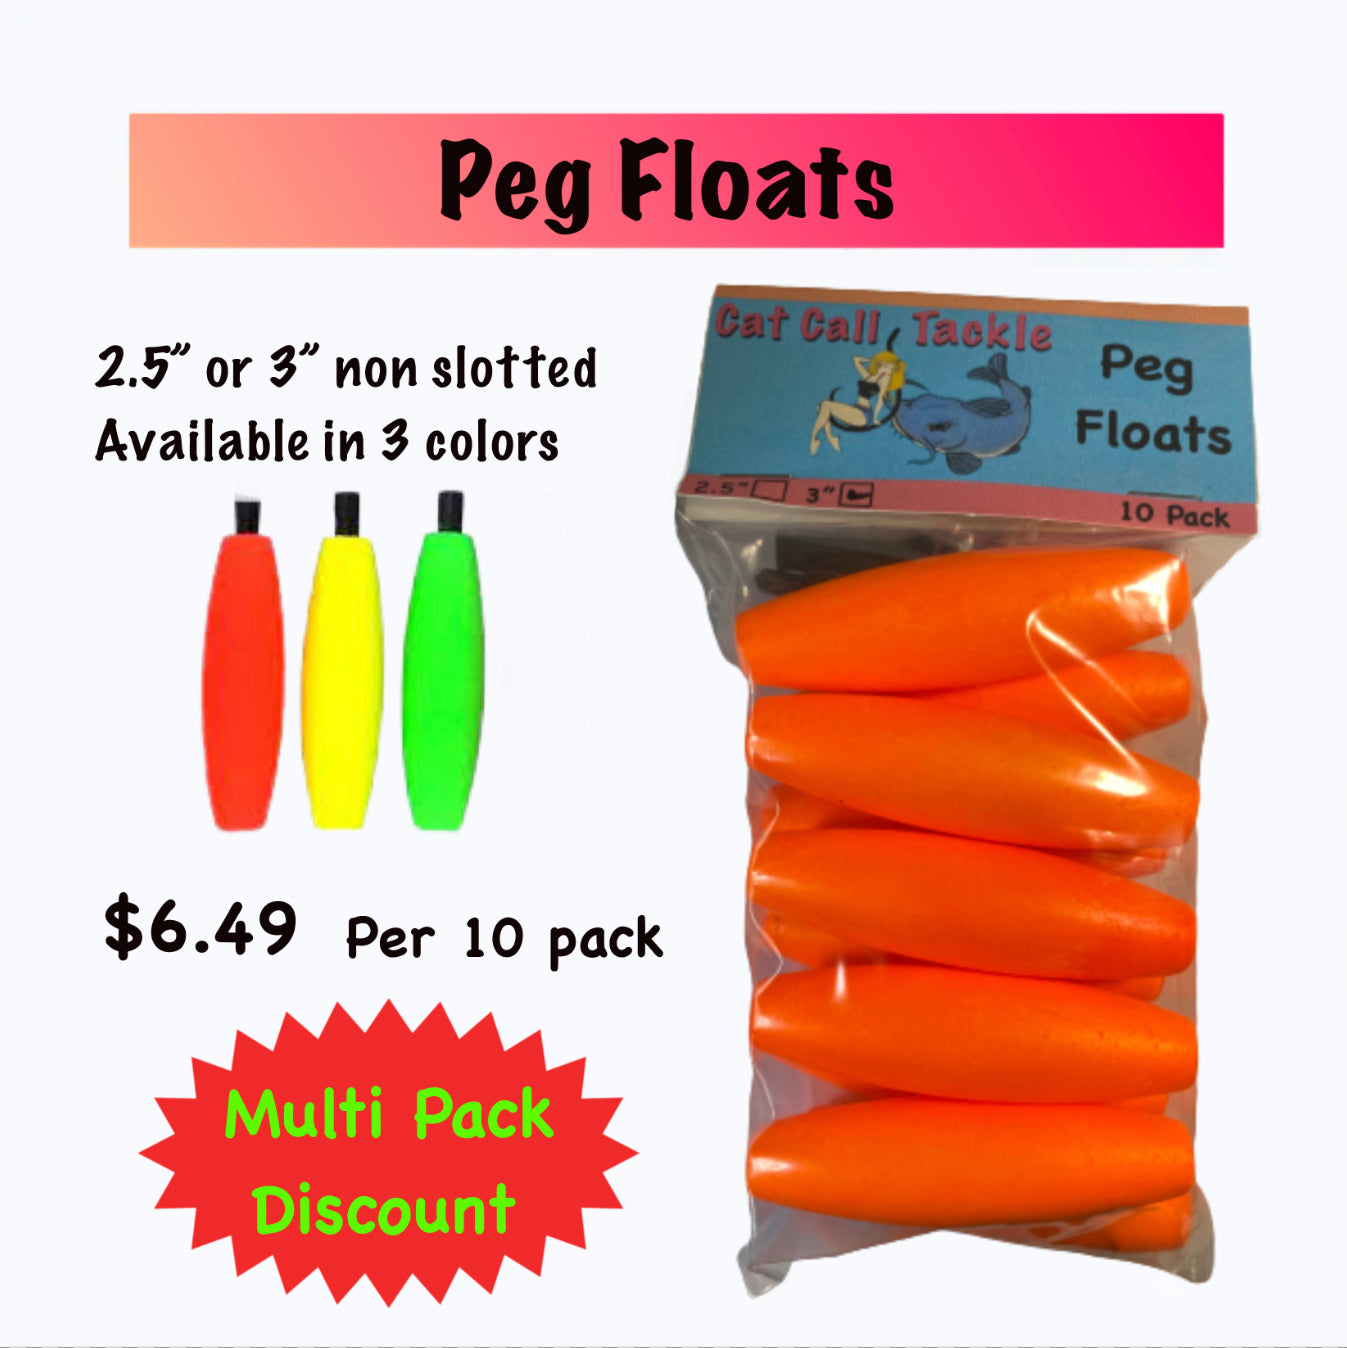 Peg Floats – Cat Call Tackle